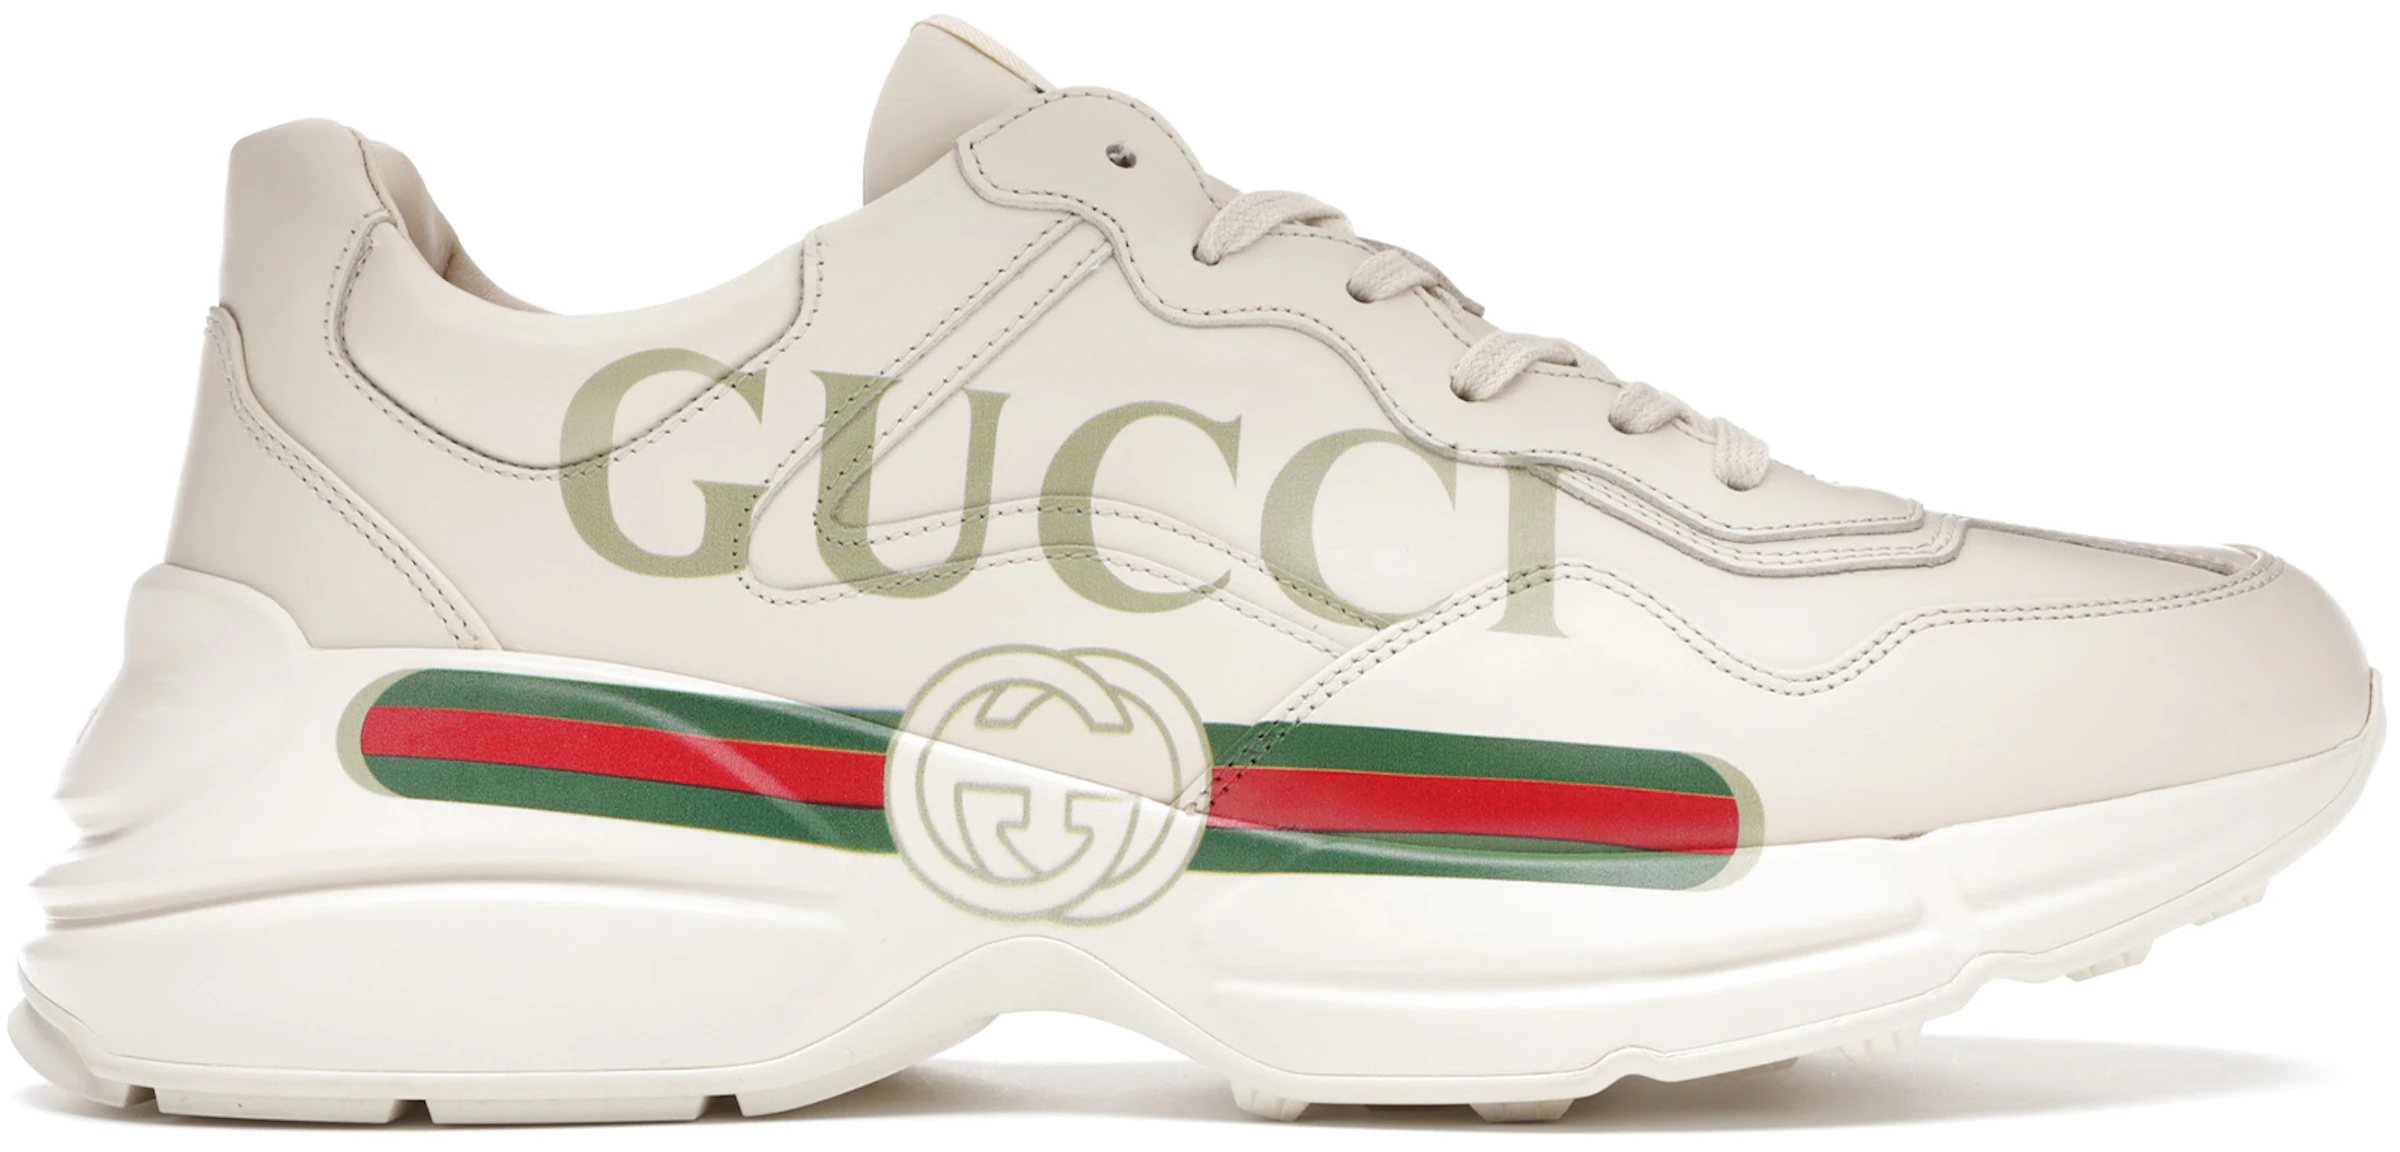 excitación Elevado Increíble Compra Luxury Brands Gucci Calzado y sneakers nuevos - StockX